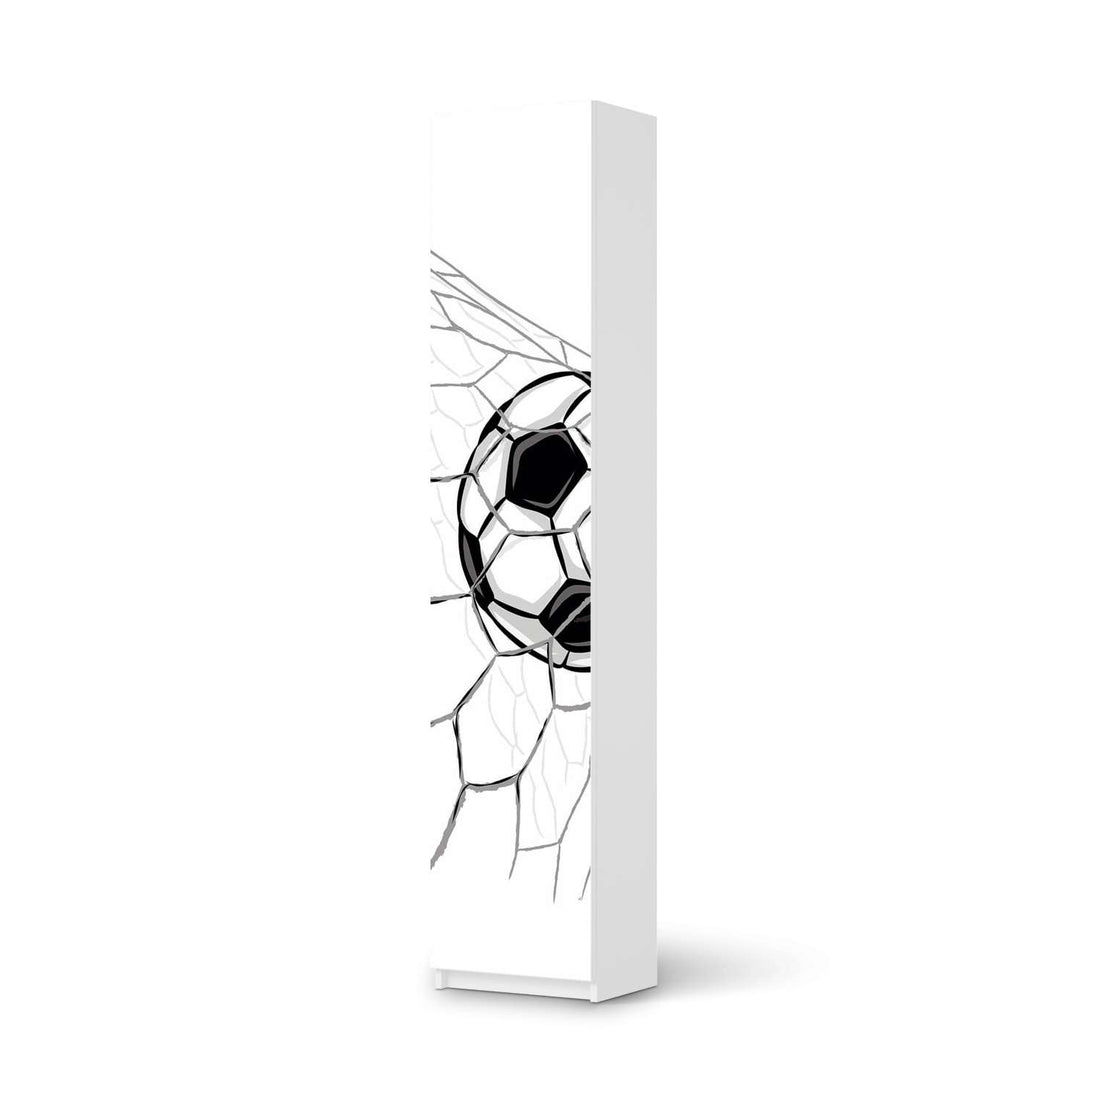 Klebefolie Eingenetzt - IKEA Pax Schrank 236 cm Höhe - 1 Tür - weiss